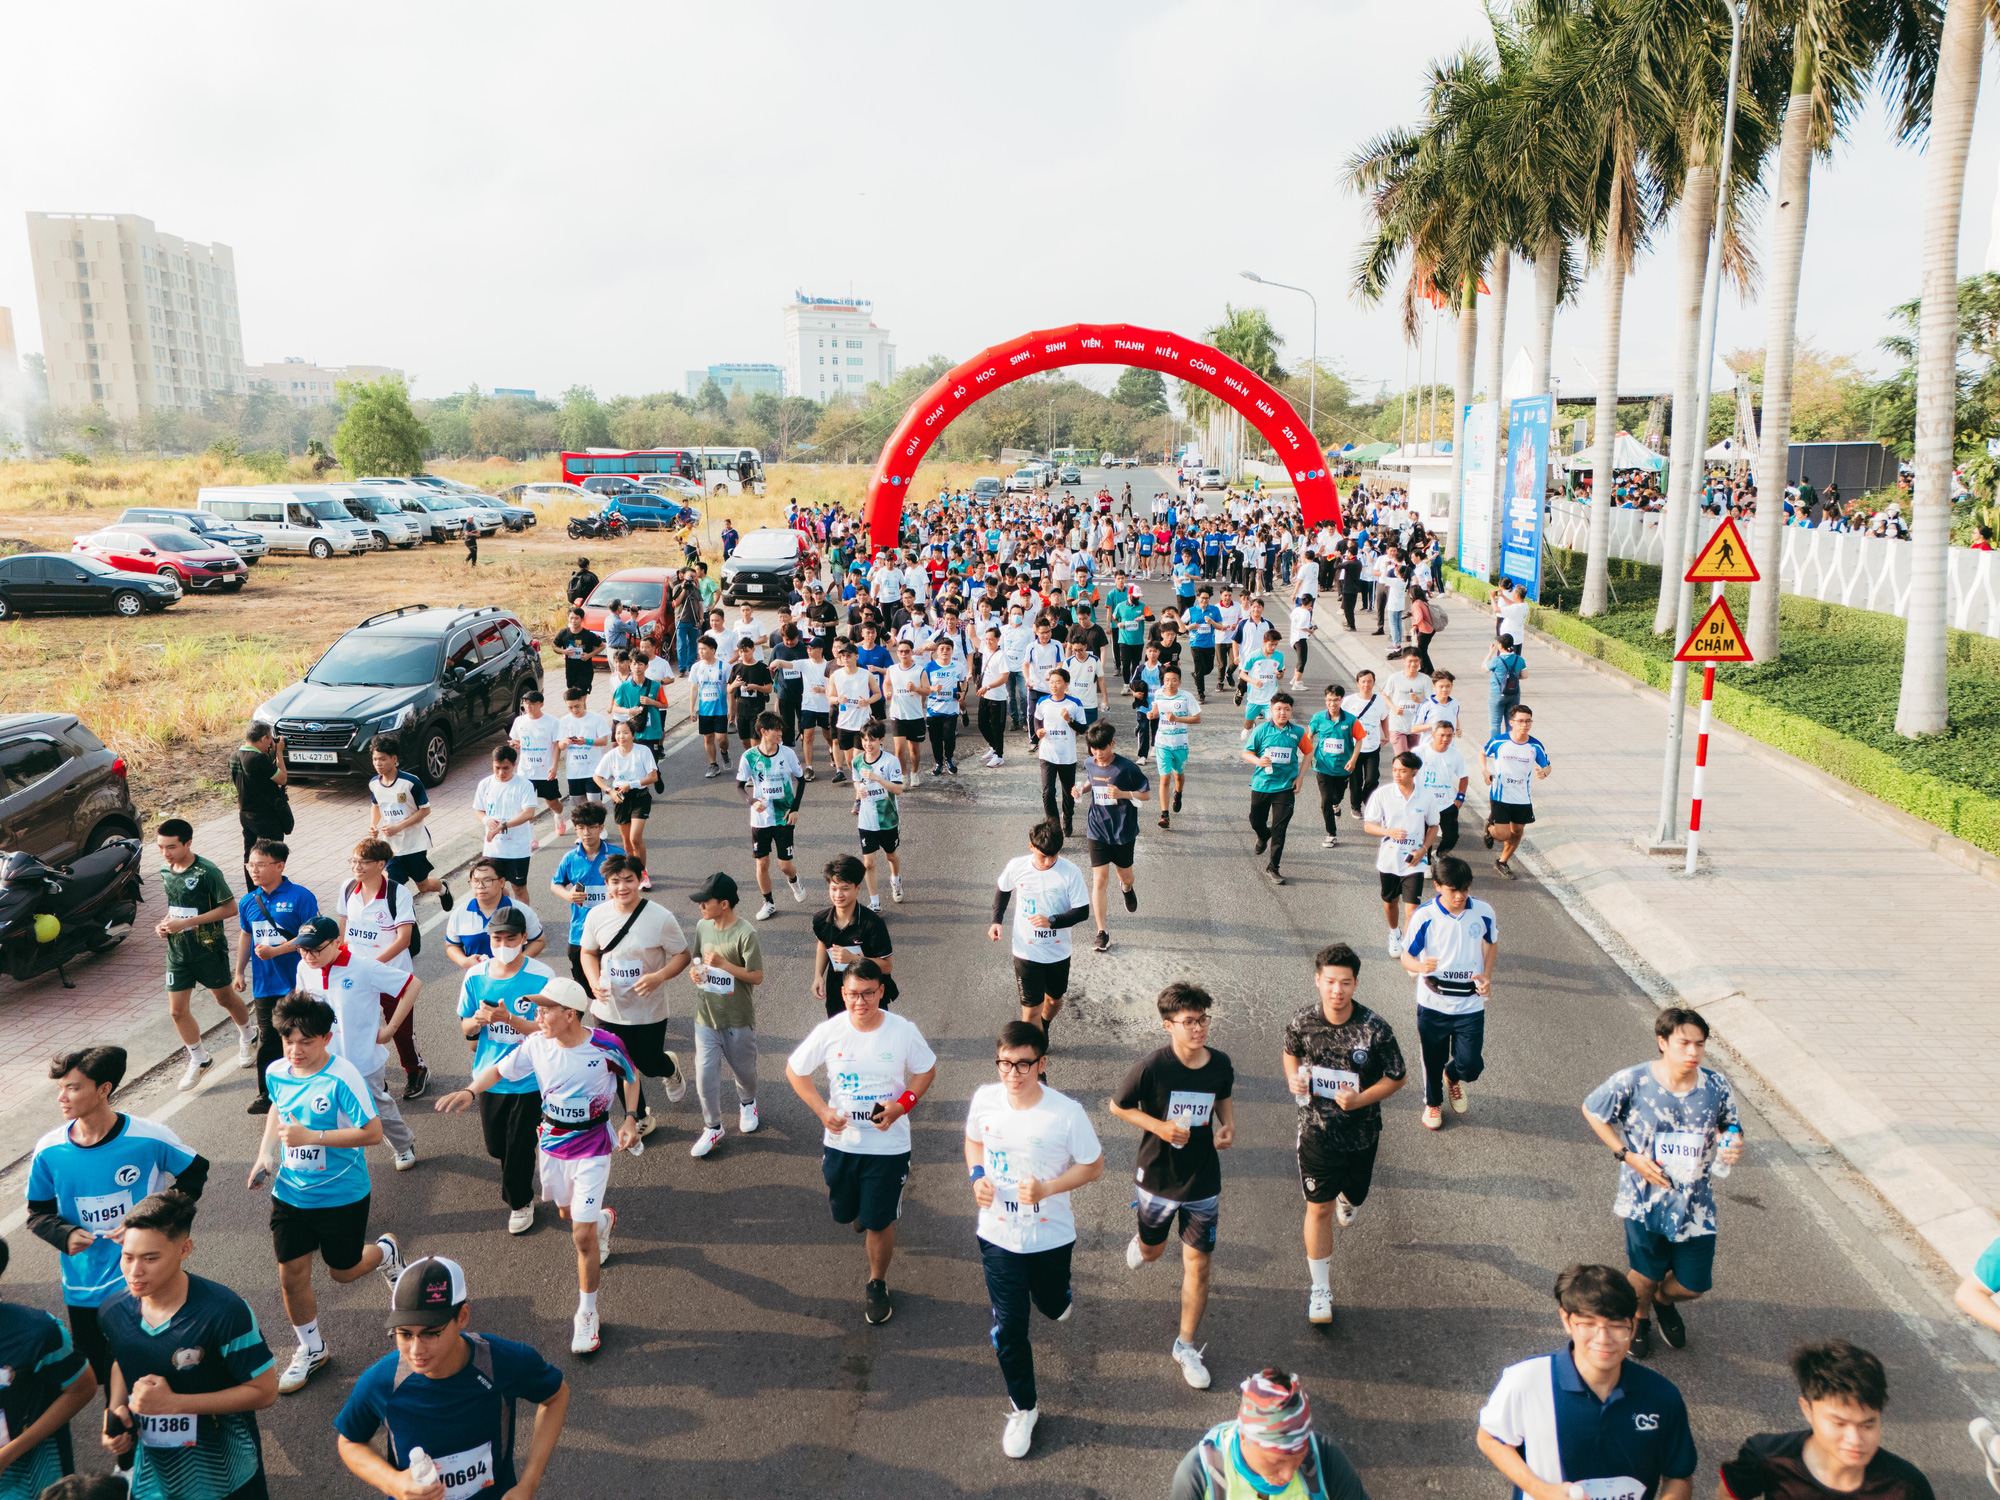 นักวิ่งรุ่นเยาว์มากกว่า 3,000 คนเข้าร่วมการแข่งขันข้ามประเทศของนักศึกษานครโฮจิมินห์ที่หมู่บ้านมหาวิทยาลัยแห่งชาติ - ภาพ: THANH HIEP